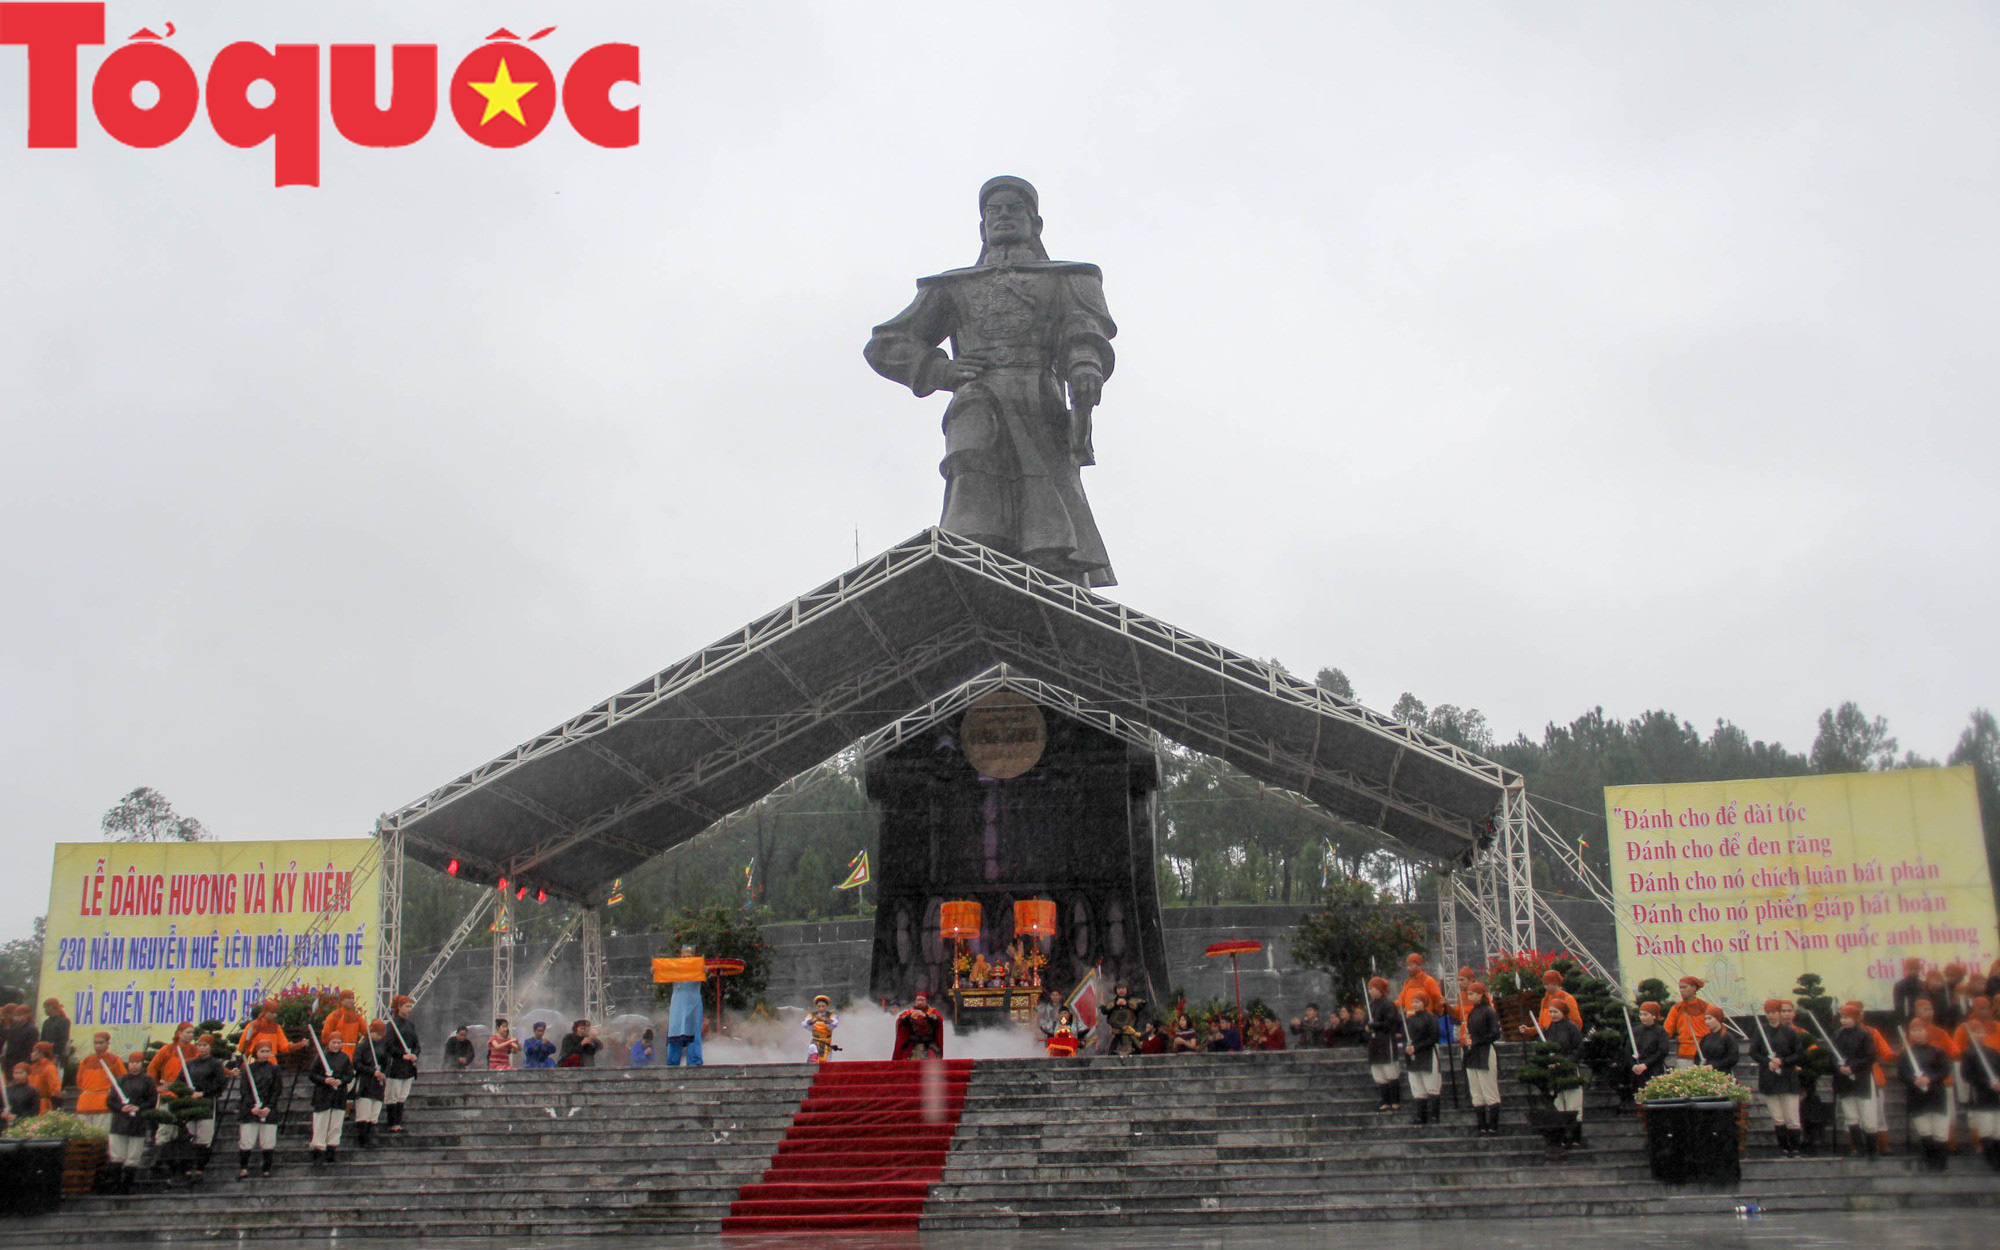 Thừa Thiên - Huế: Dâng hương tưởng nhớ anh hùng dân tộc Nguyễn Huệ